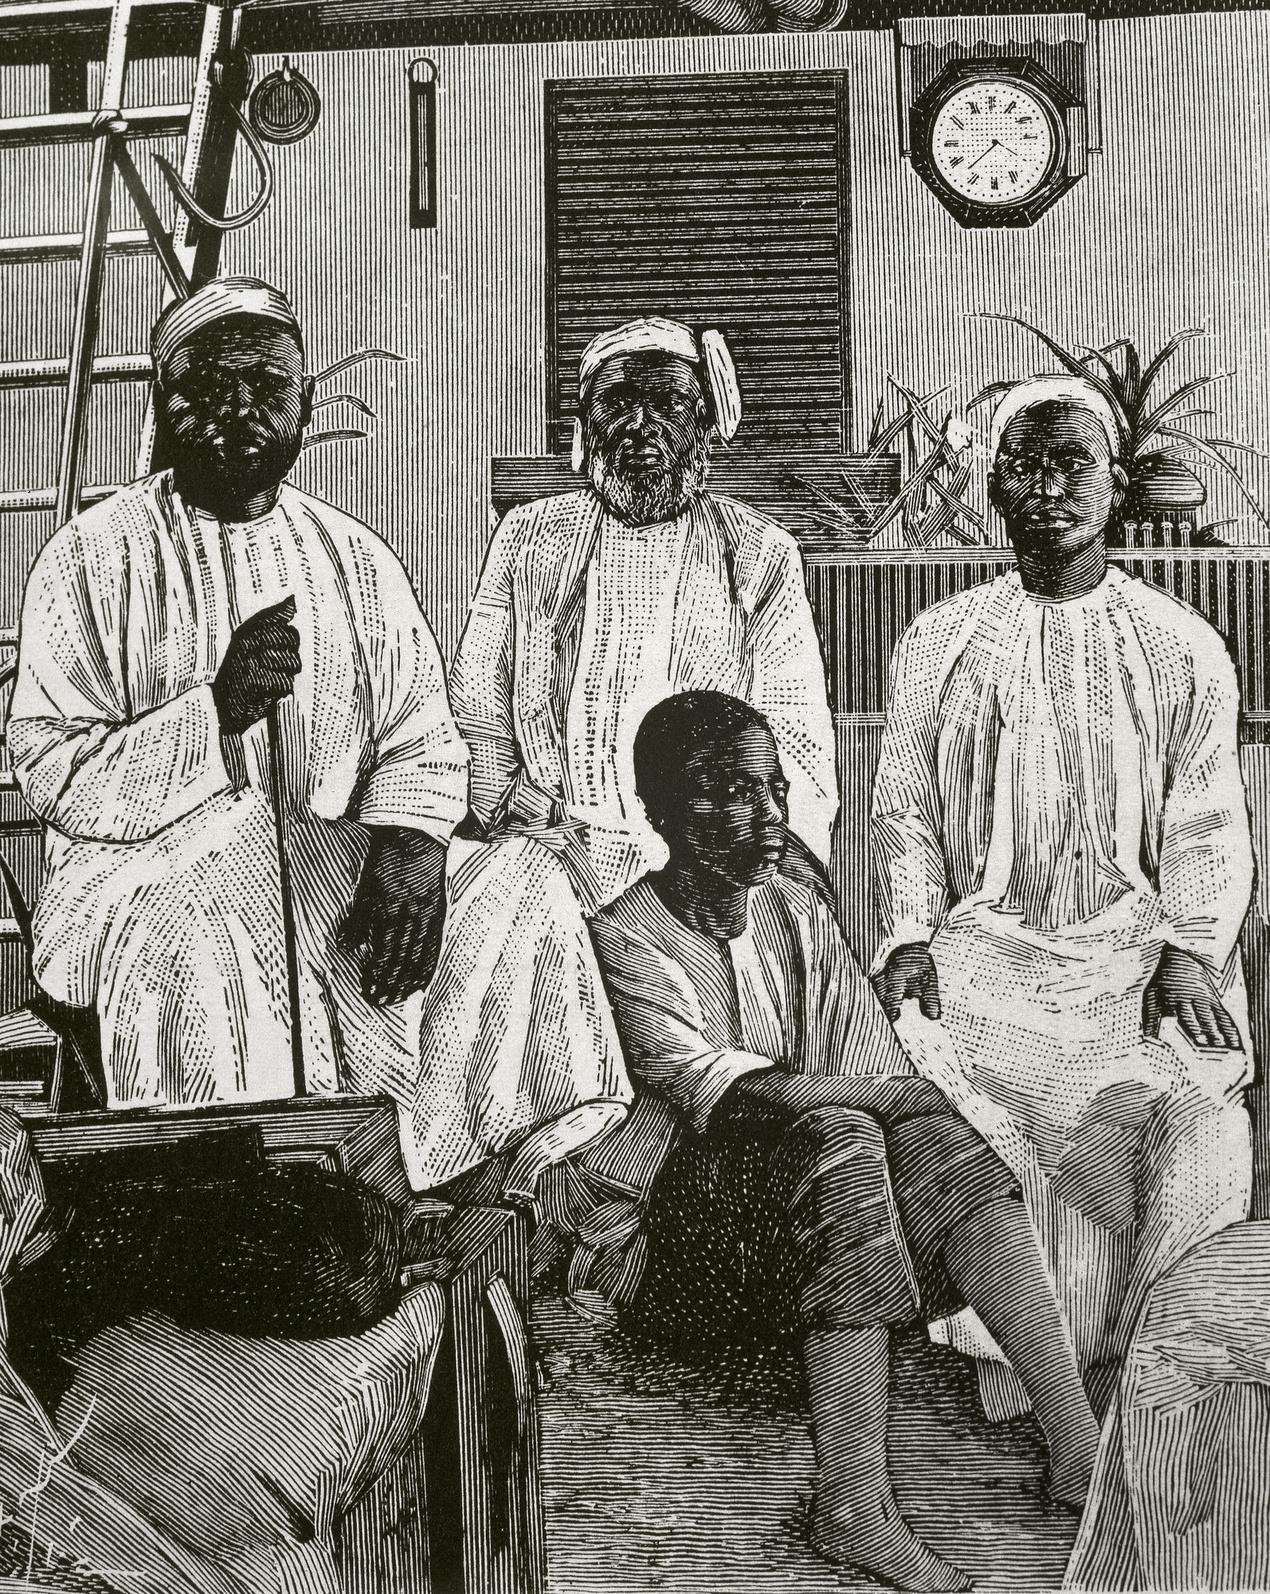 Tippo Tip (1832 - 1905) Marchand d'esclaves originaire de Zanzibar. Il fut également vendeur d'ivoire, explorateur, propriétaire de plantations et gouverneur de province au Congo. Ici, entouré de ses collaborateurs.